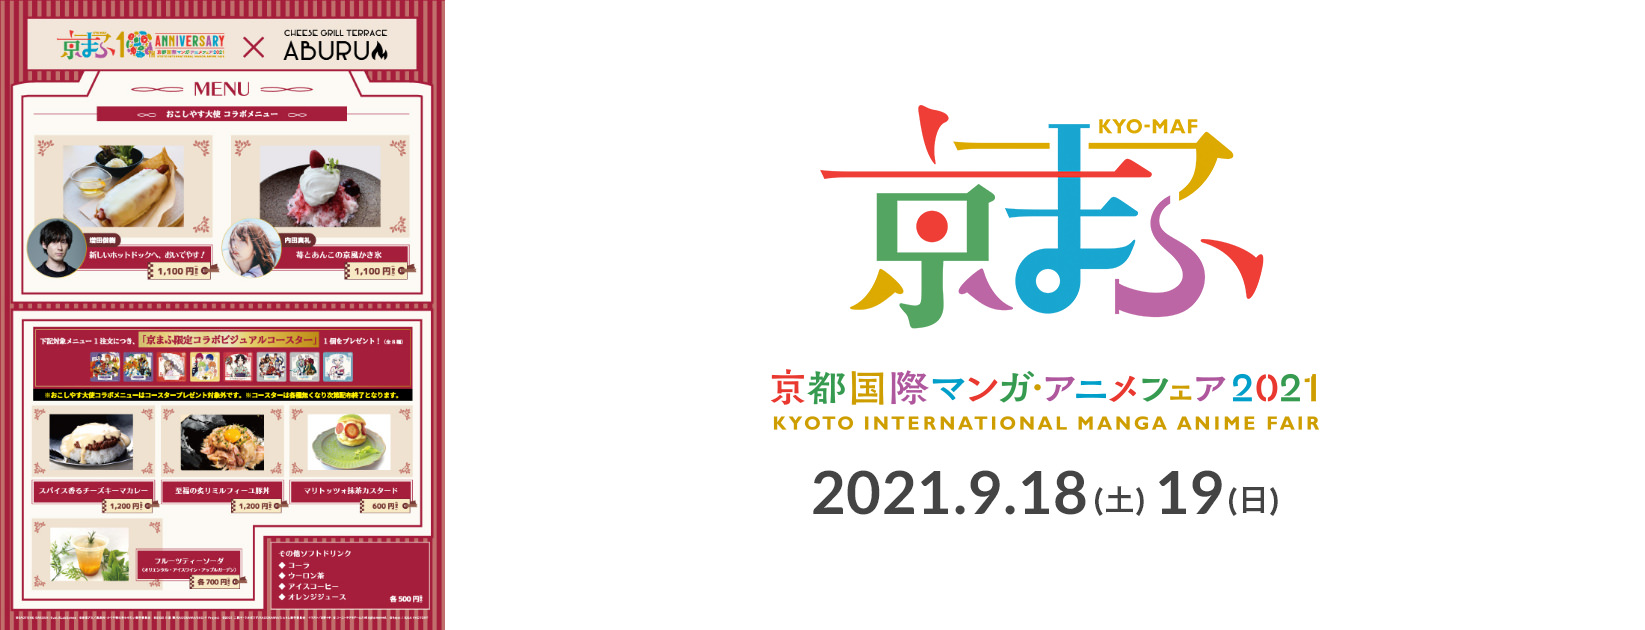 京まふコラボカフェ in みやこめっせABURU 9月18日より開催!